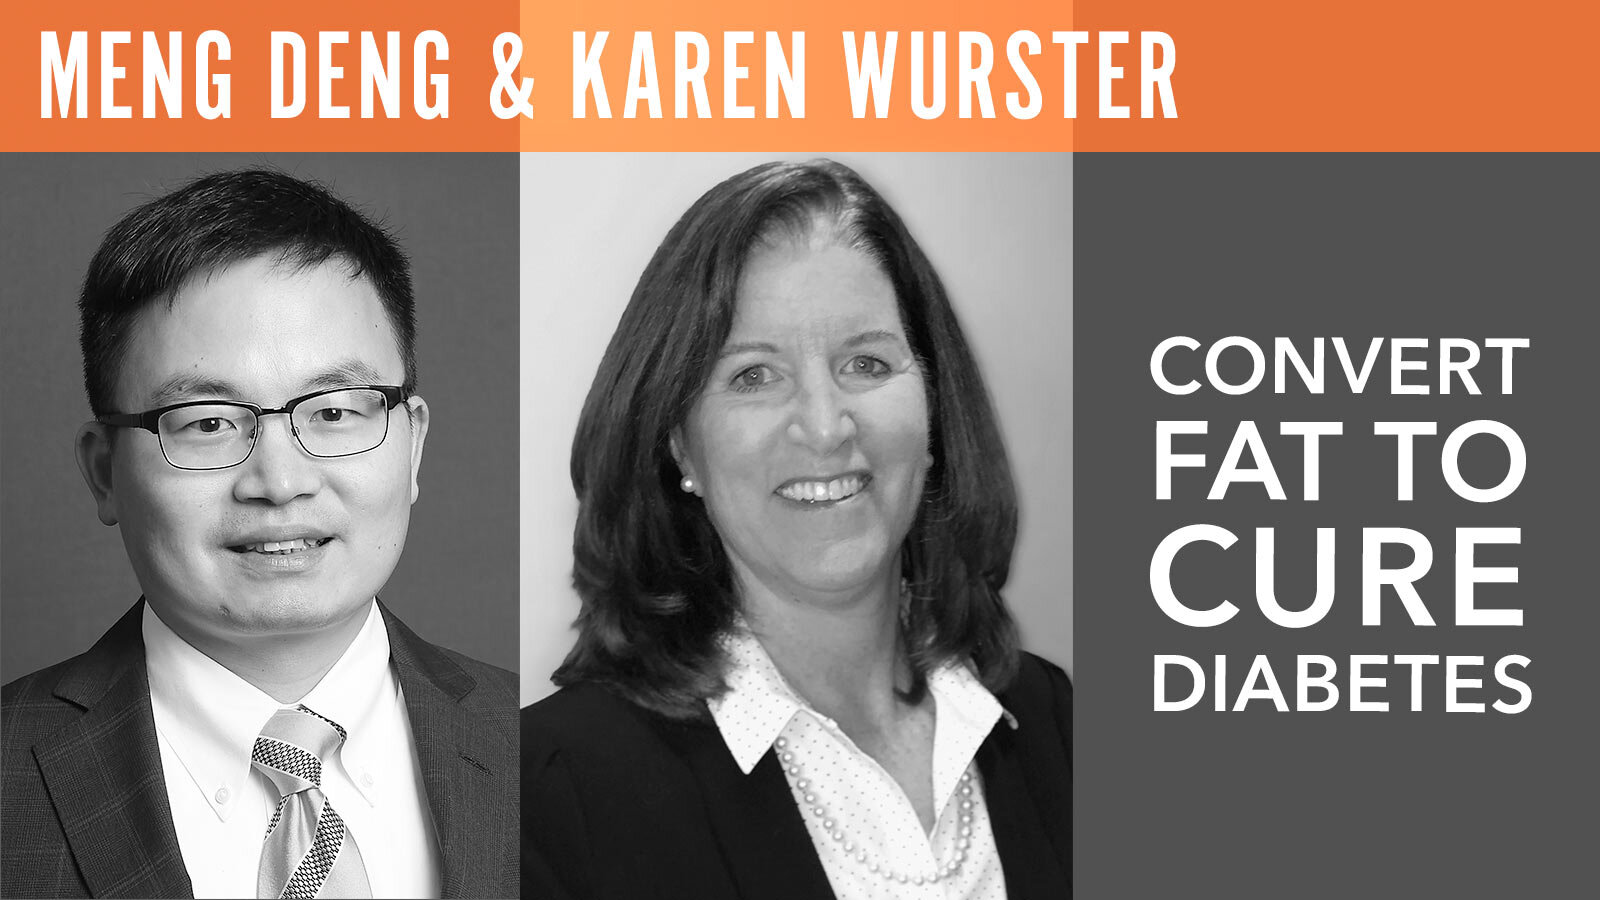 Meng Deng & Karen Wurster, "Convert Fat to Cure Diabetes"